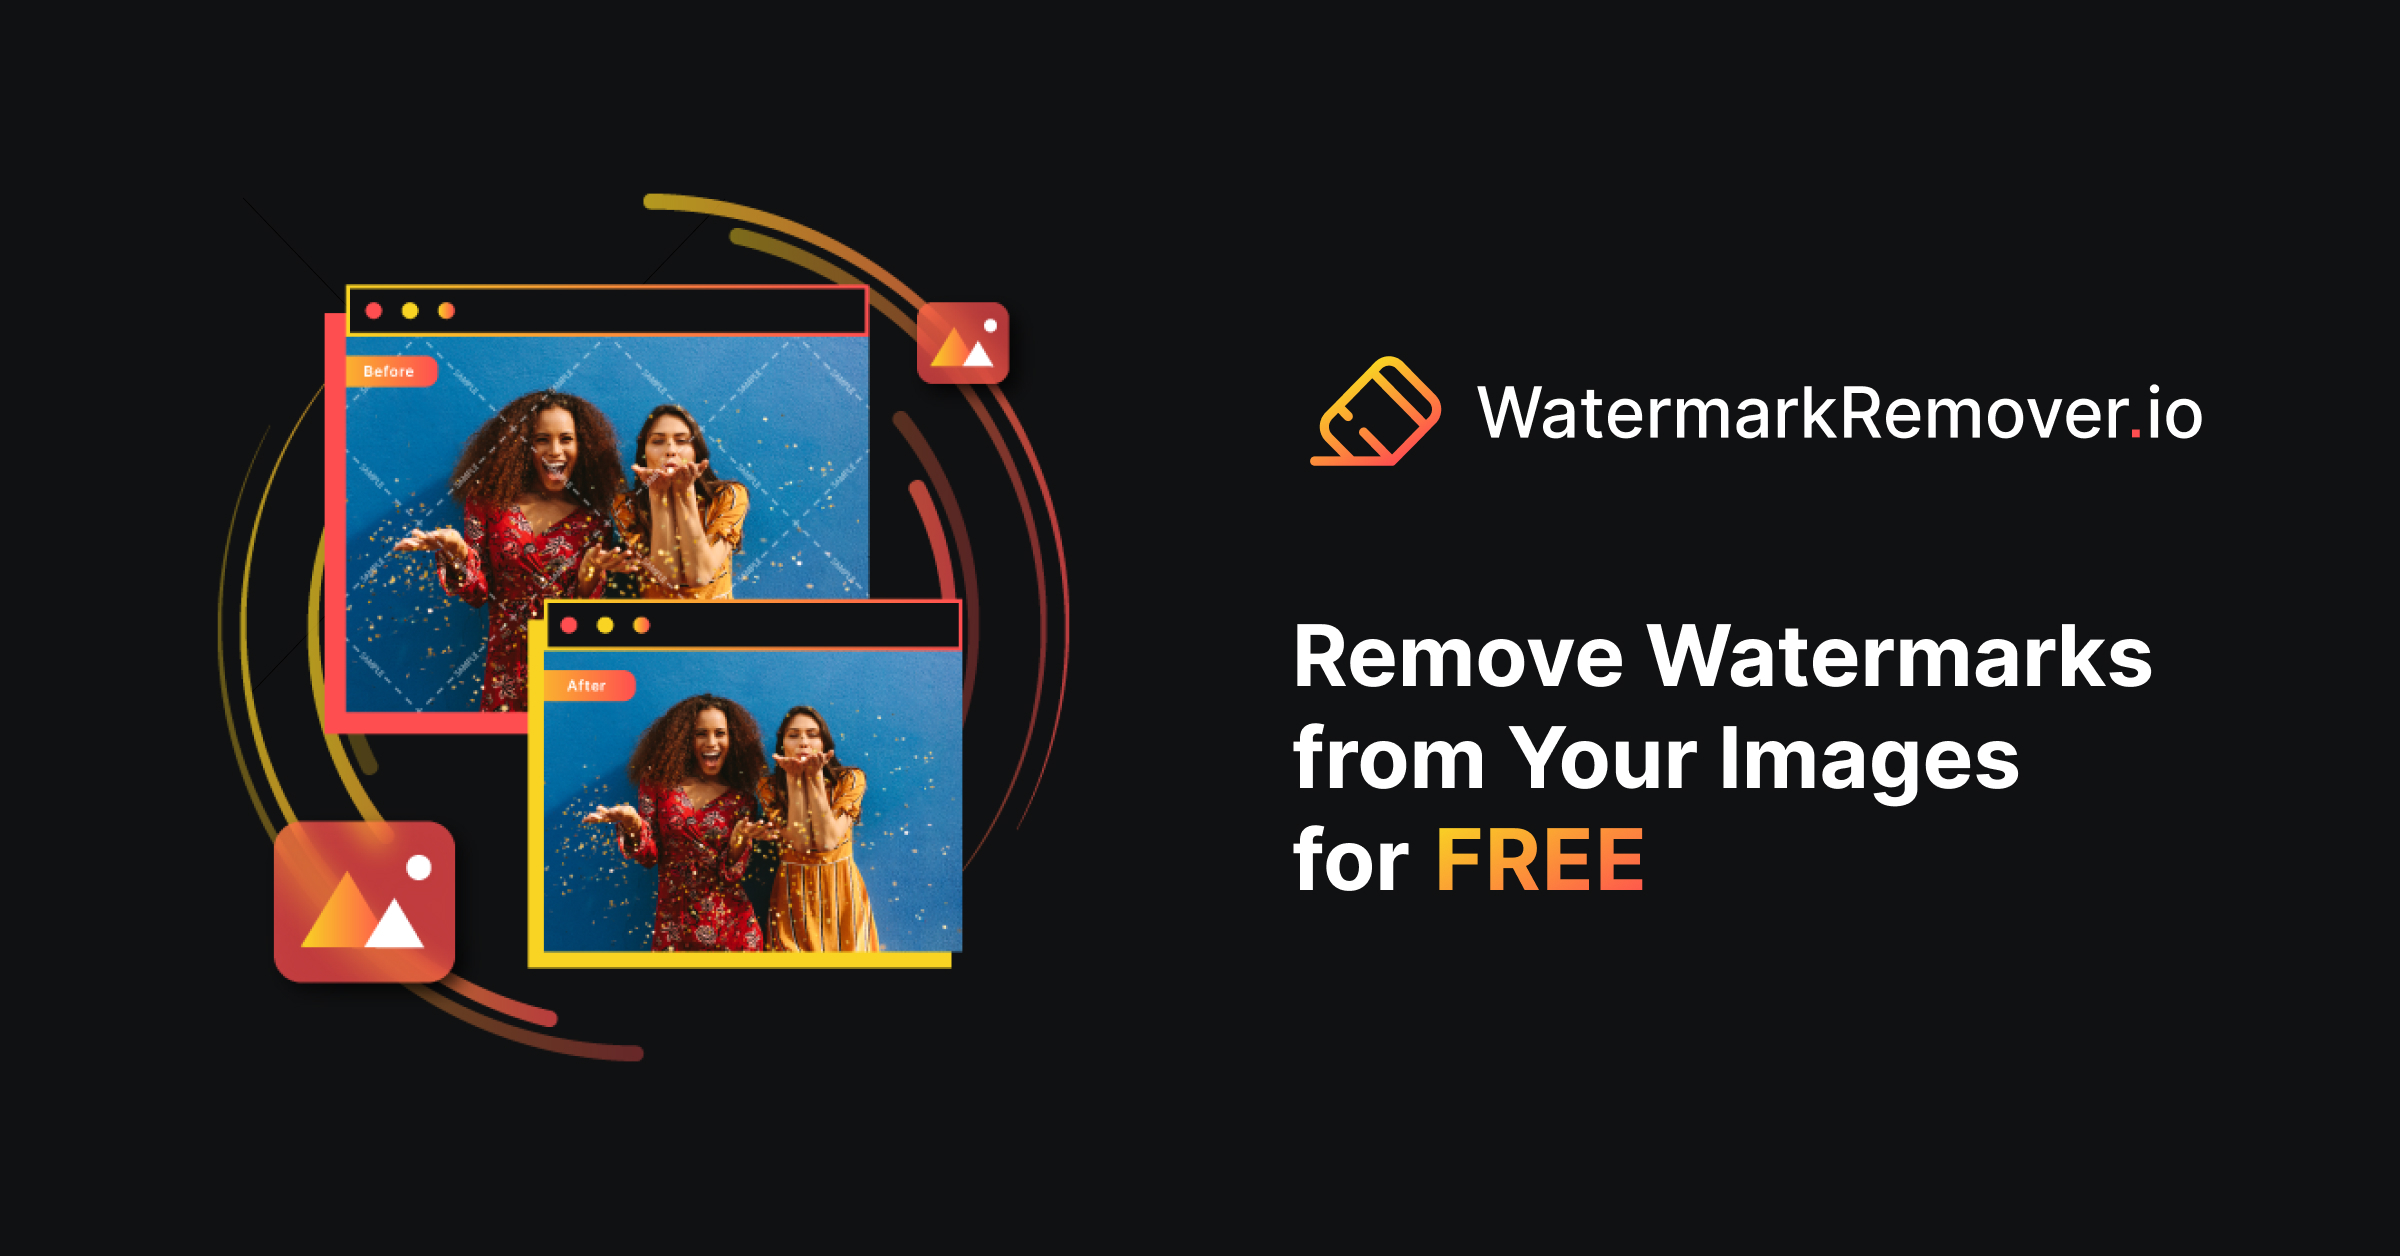 Remover de marcas de agua: use IA para eliminar las marcas de agua de una imagen